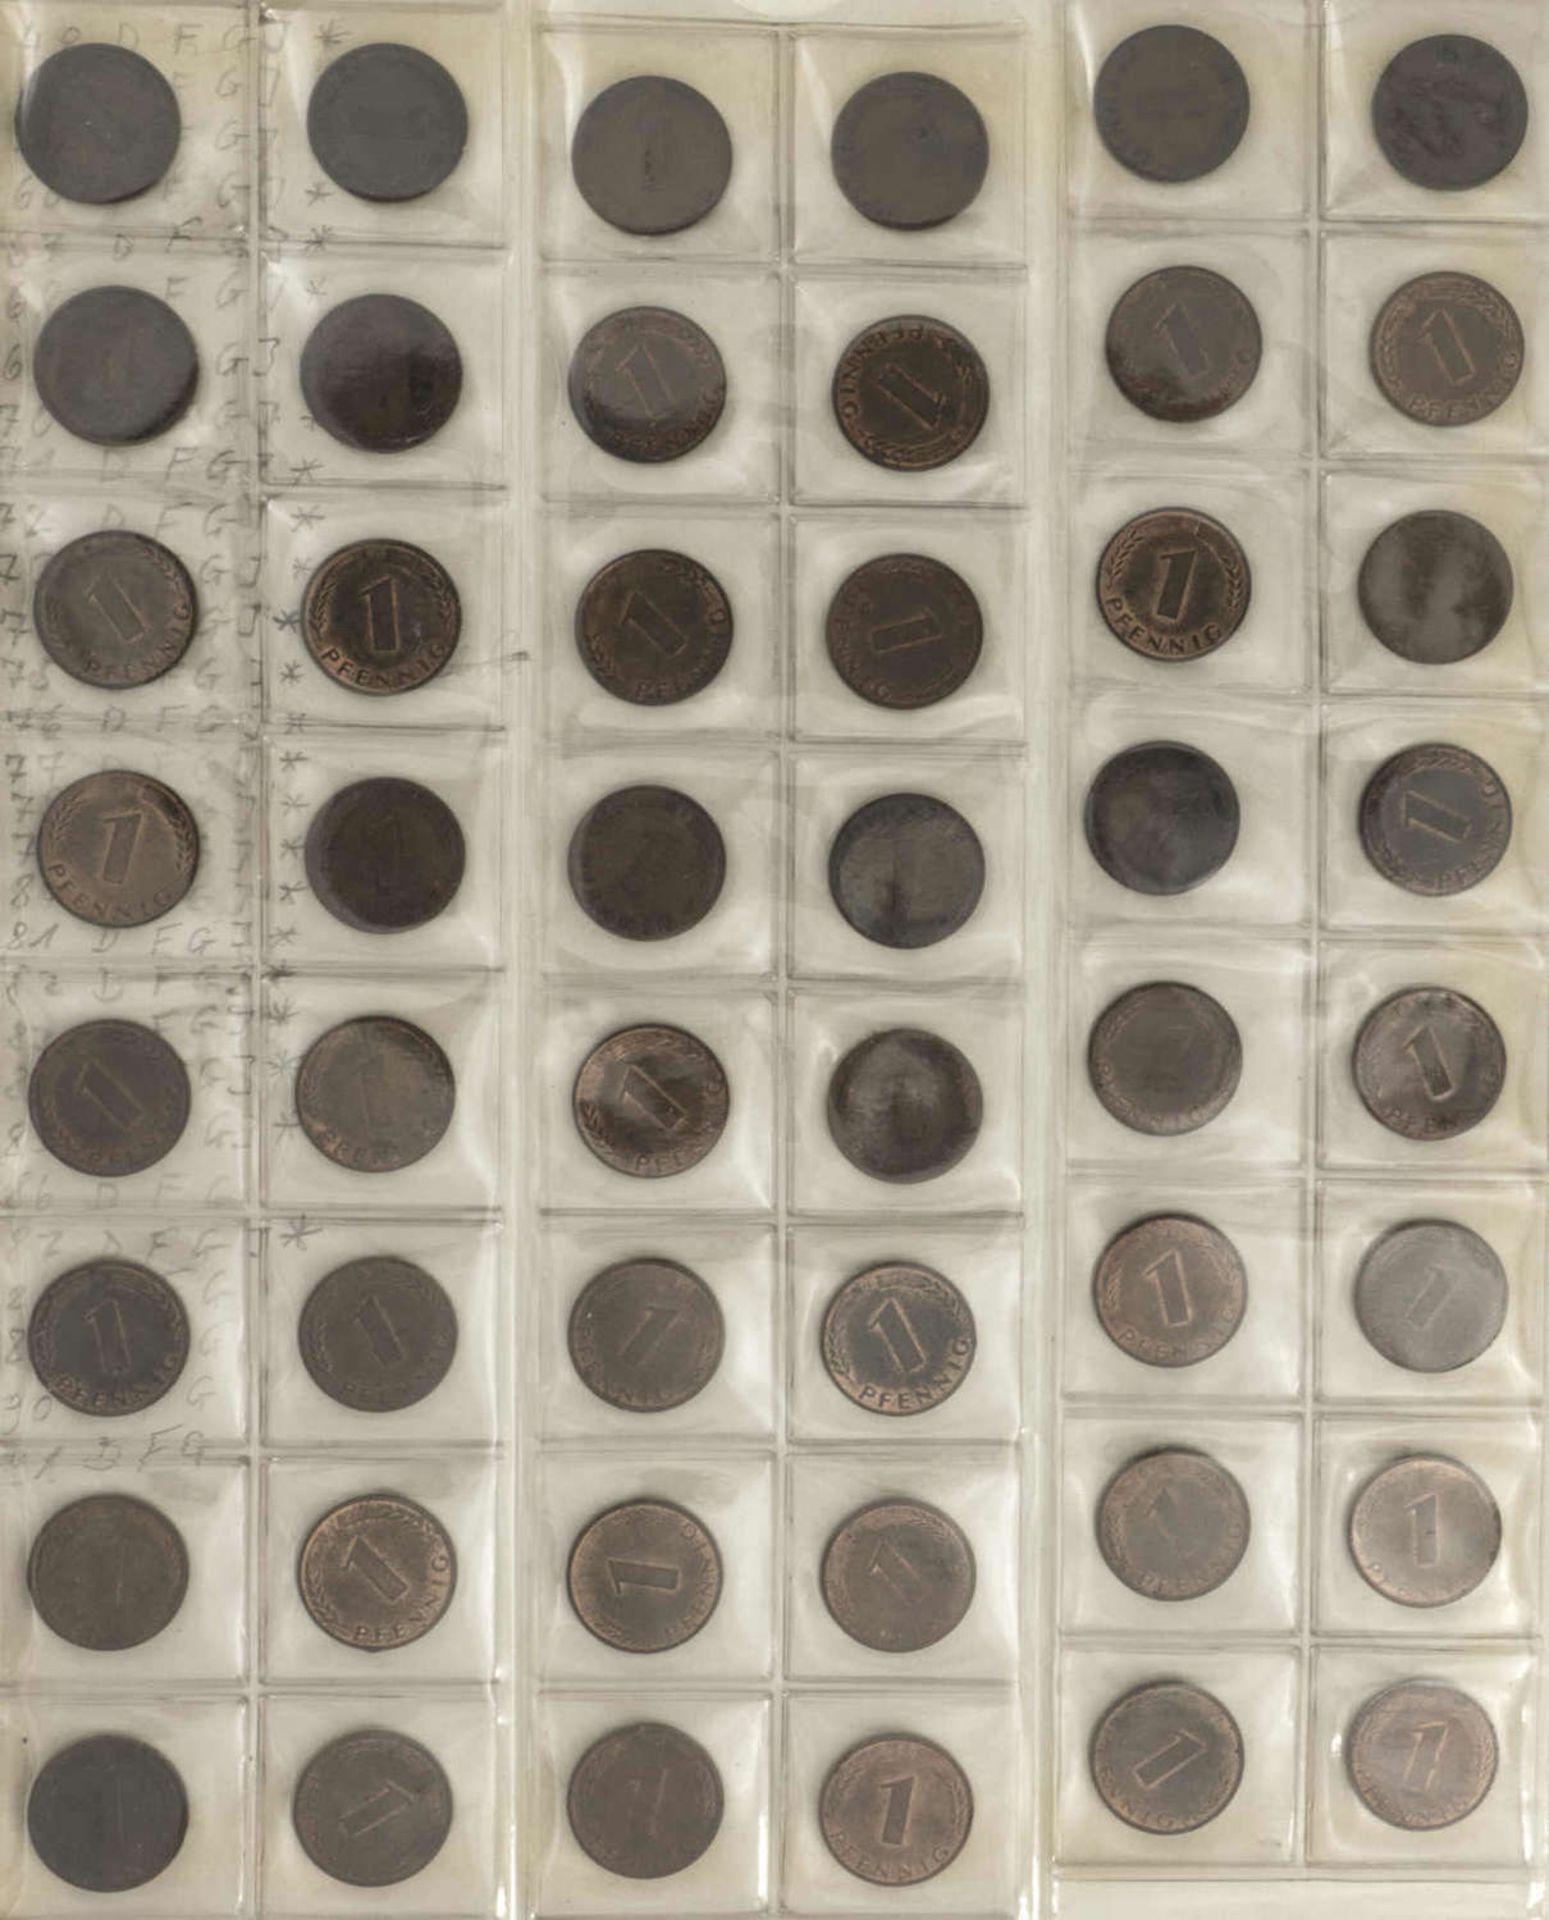 BRD Sammlung 1 Pfennig und 2 Pfennig - Münzen. Dabei: 1 Pfennig: 1948 - 50 DFGJ, 1966 - 85 DFGJ, 1 - Image 4 of 6